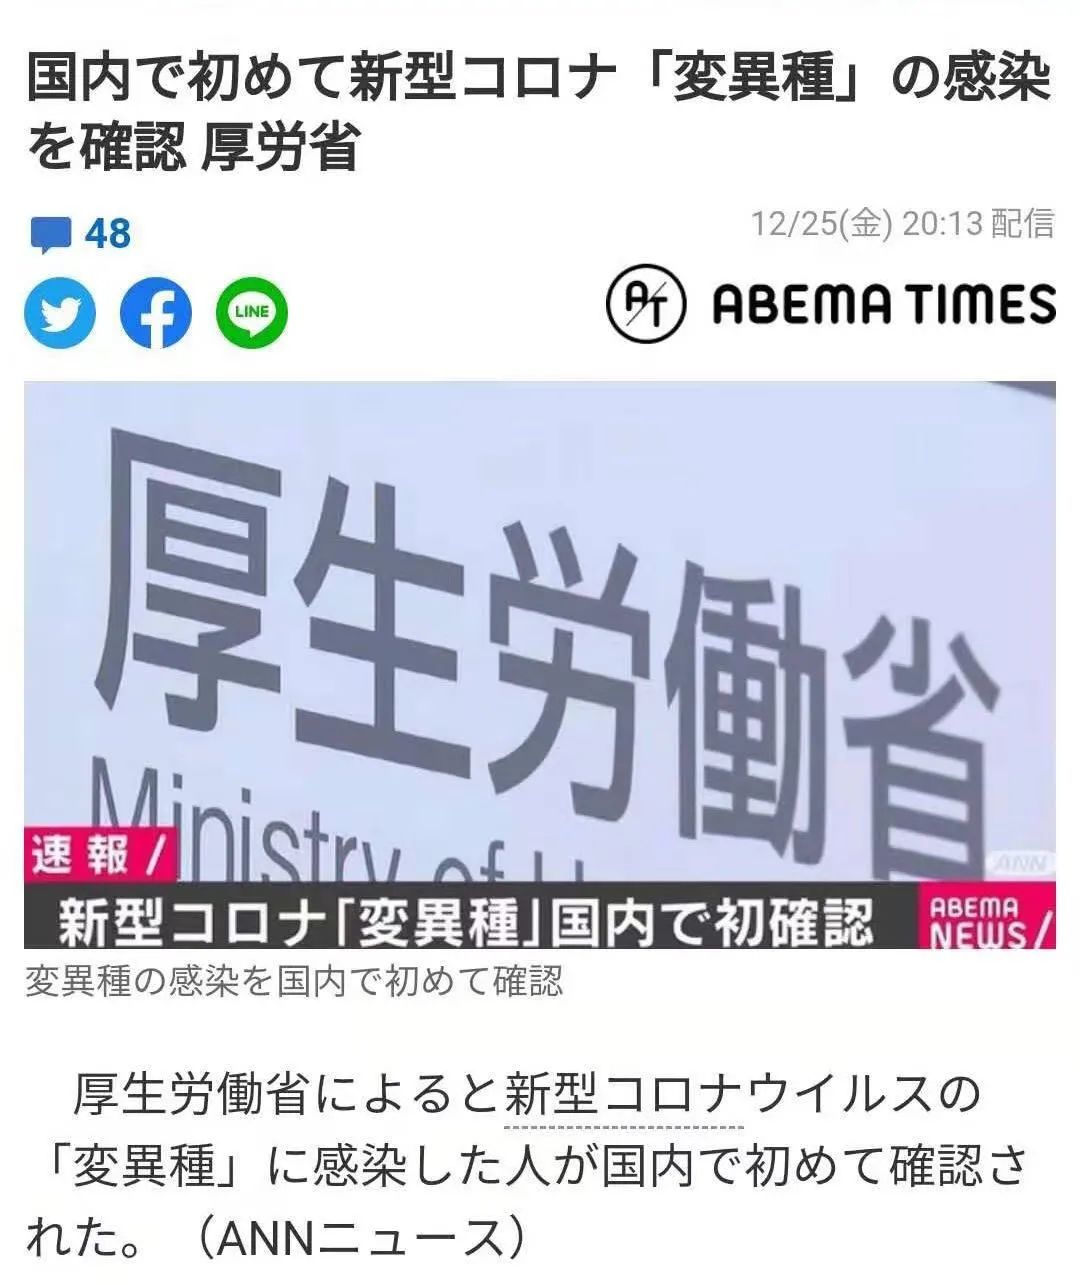 35人共用一座坟 日本推出 共享坟墓 蓝牙激活墓碑 早道看日本微信公众号文章